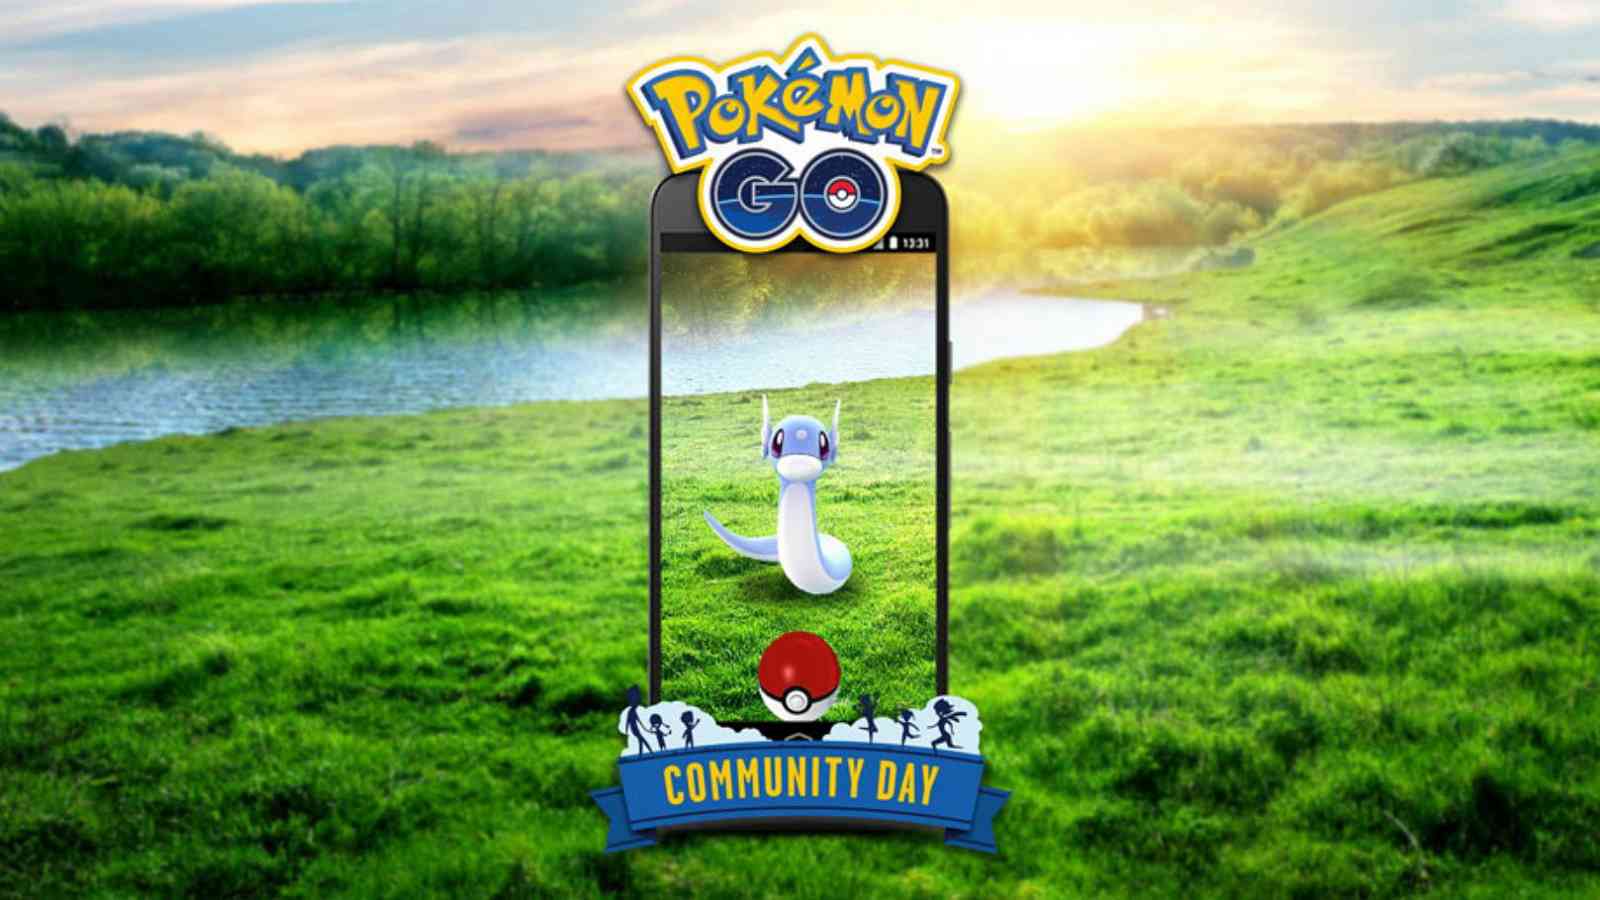 [PokemonGO] Druhý komunitní den ve znamení Dratiniho